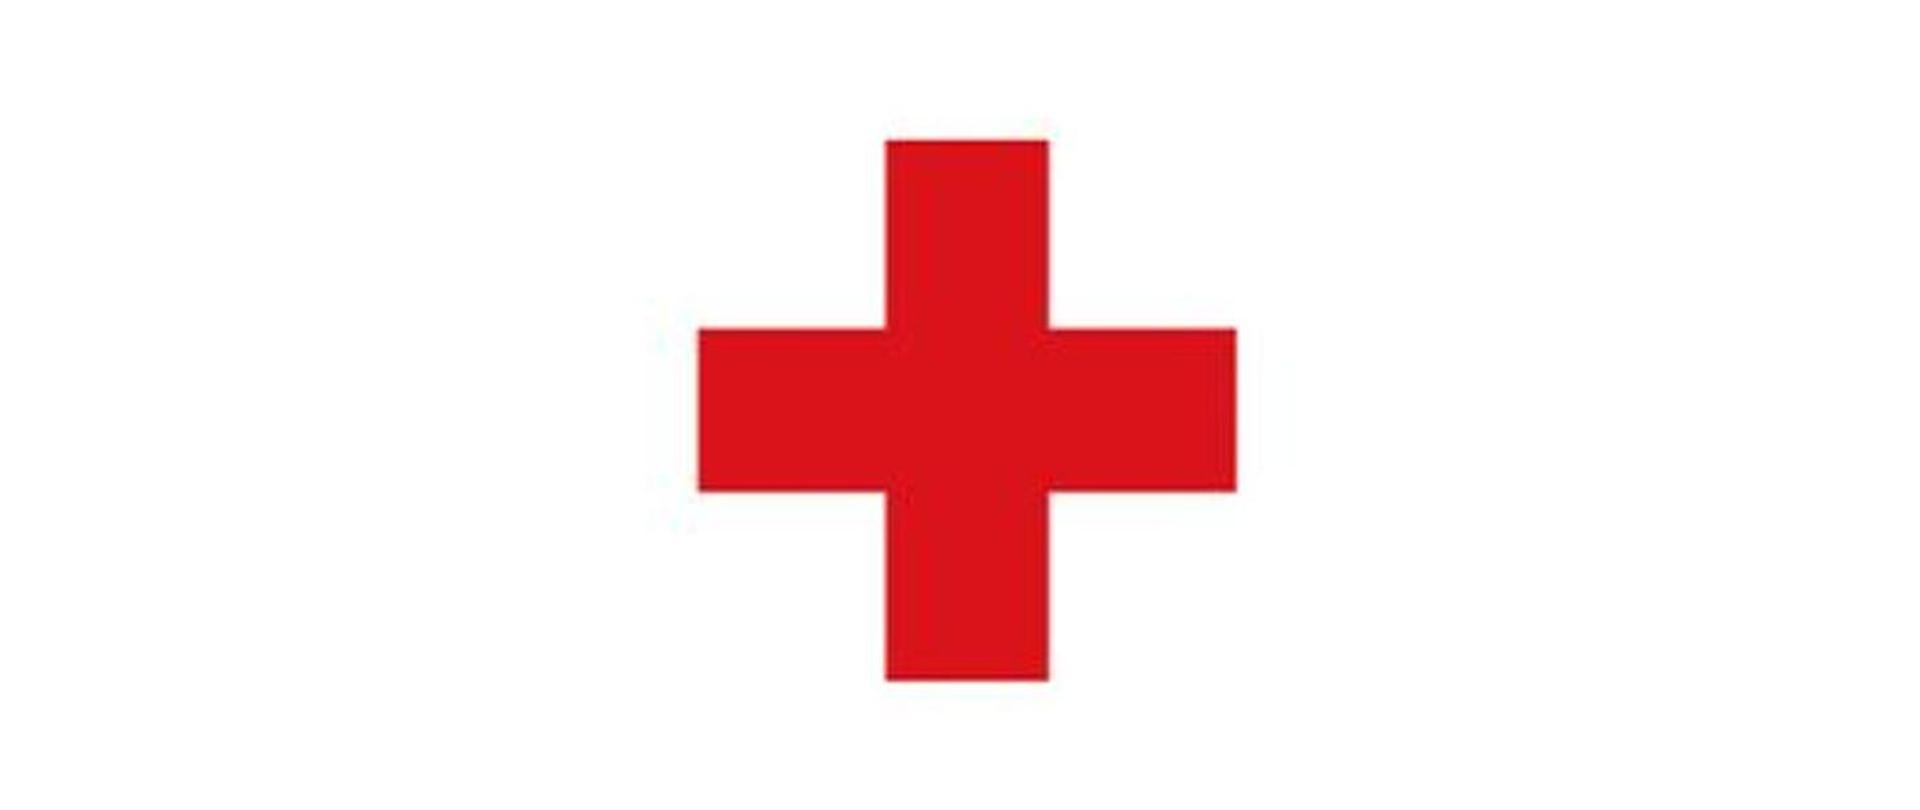 Na białym tle narysowany jest czerwony krzyż.